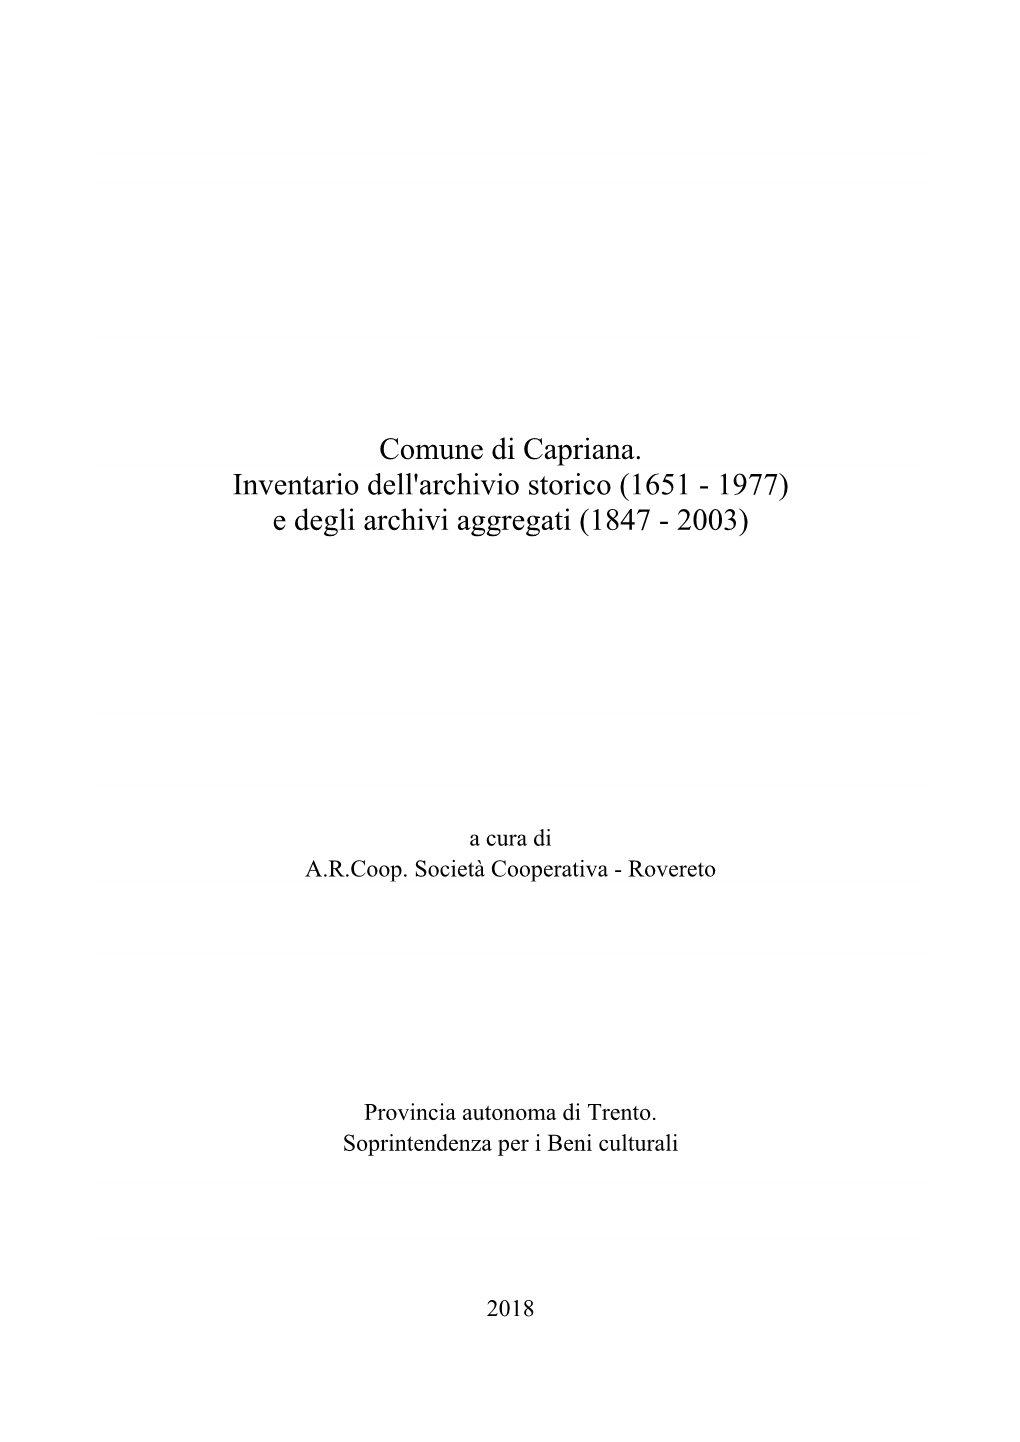 Comune Di Capriana. Inventario Dell'archivio Storico (1651 - 1977) E Degli Archivi Aggregati (1847 - 2003)